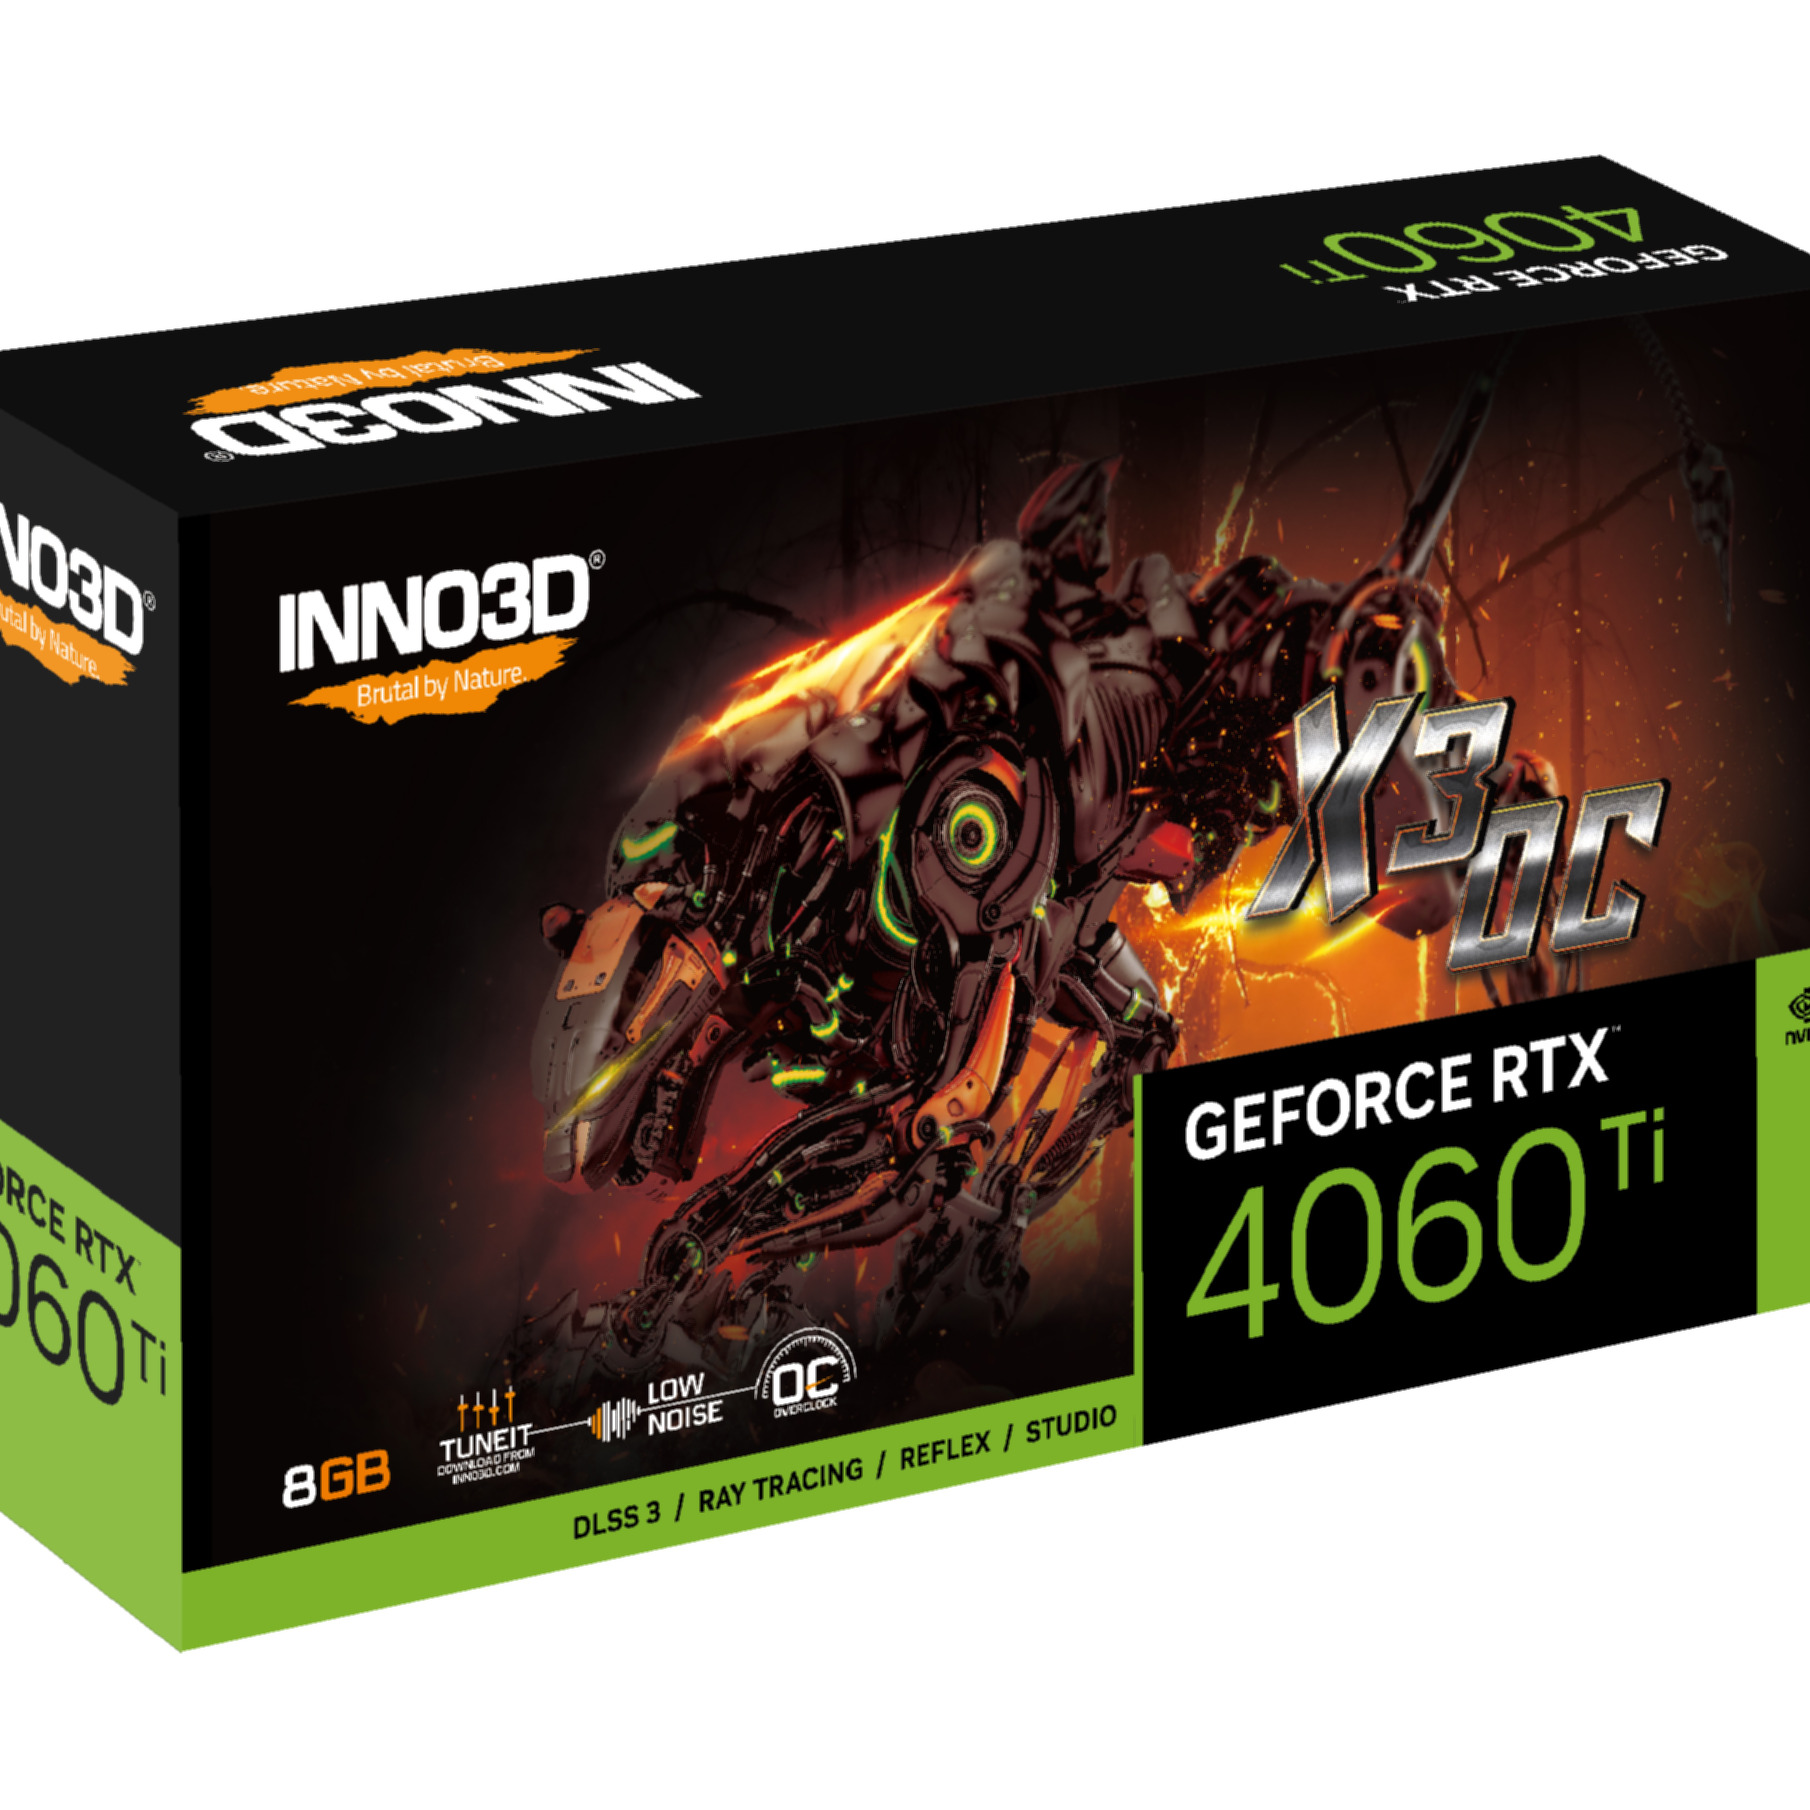 Ti 4060 X3 RTX GeForce (NVIDIA, INNO3D Grafikkarte) OC